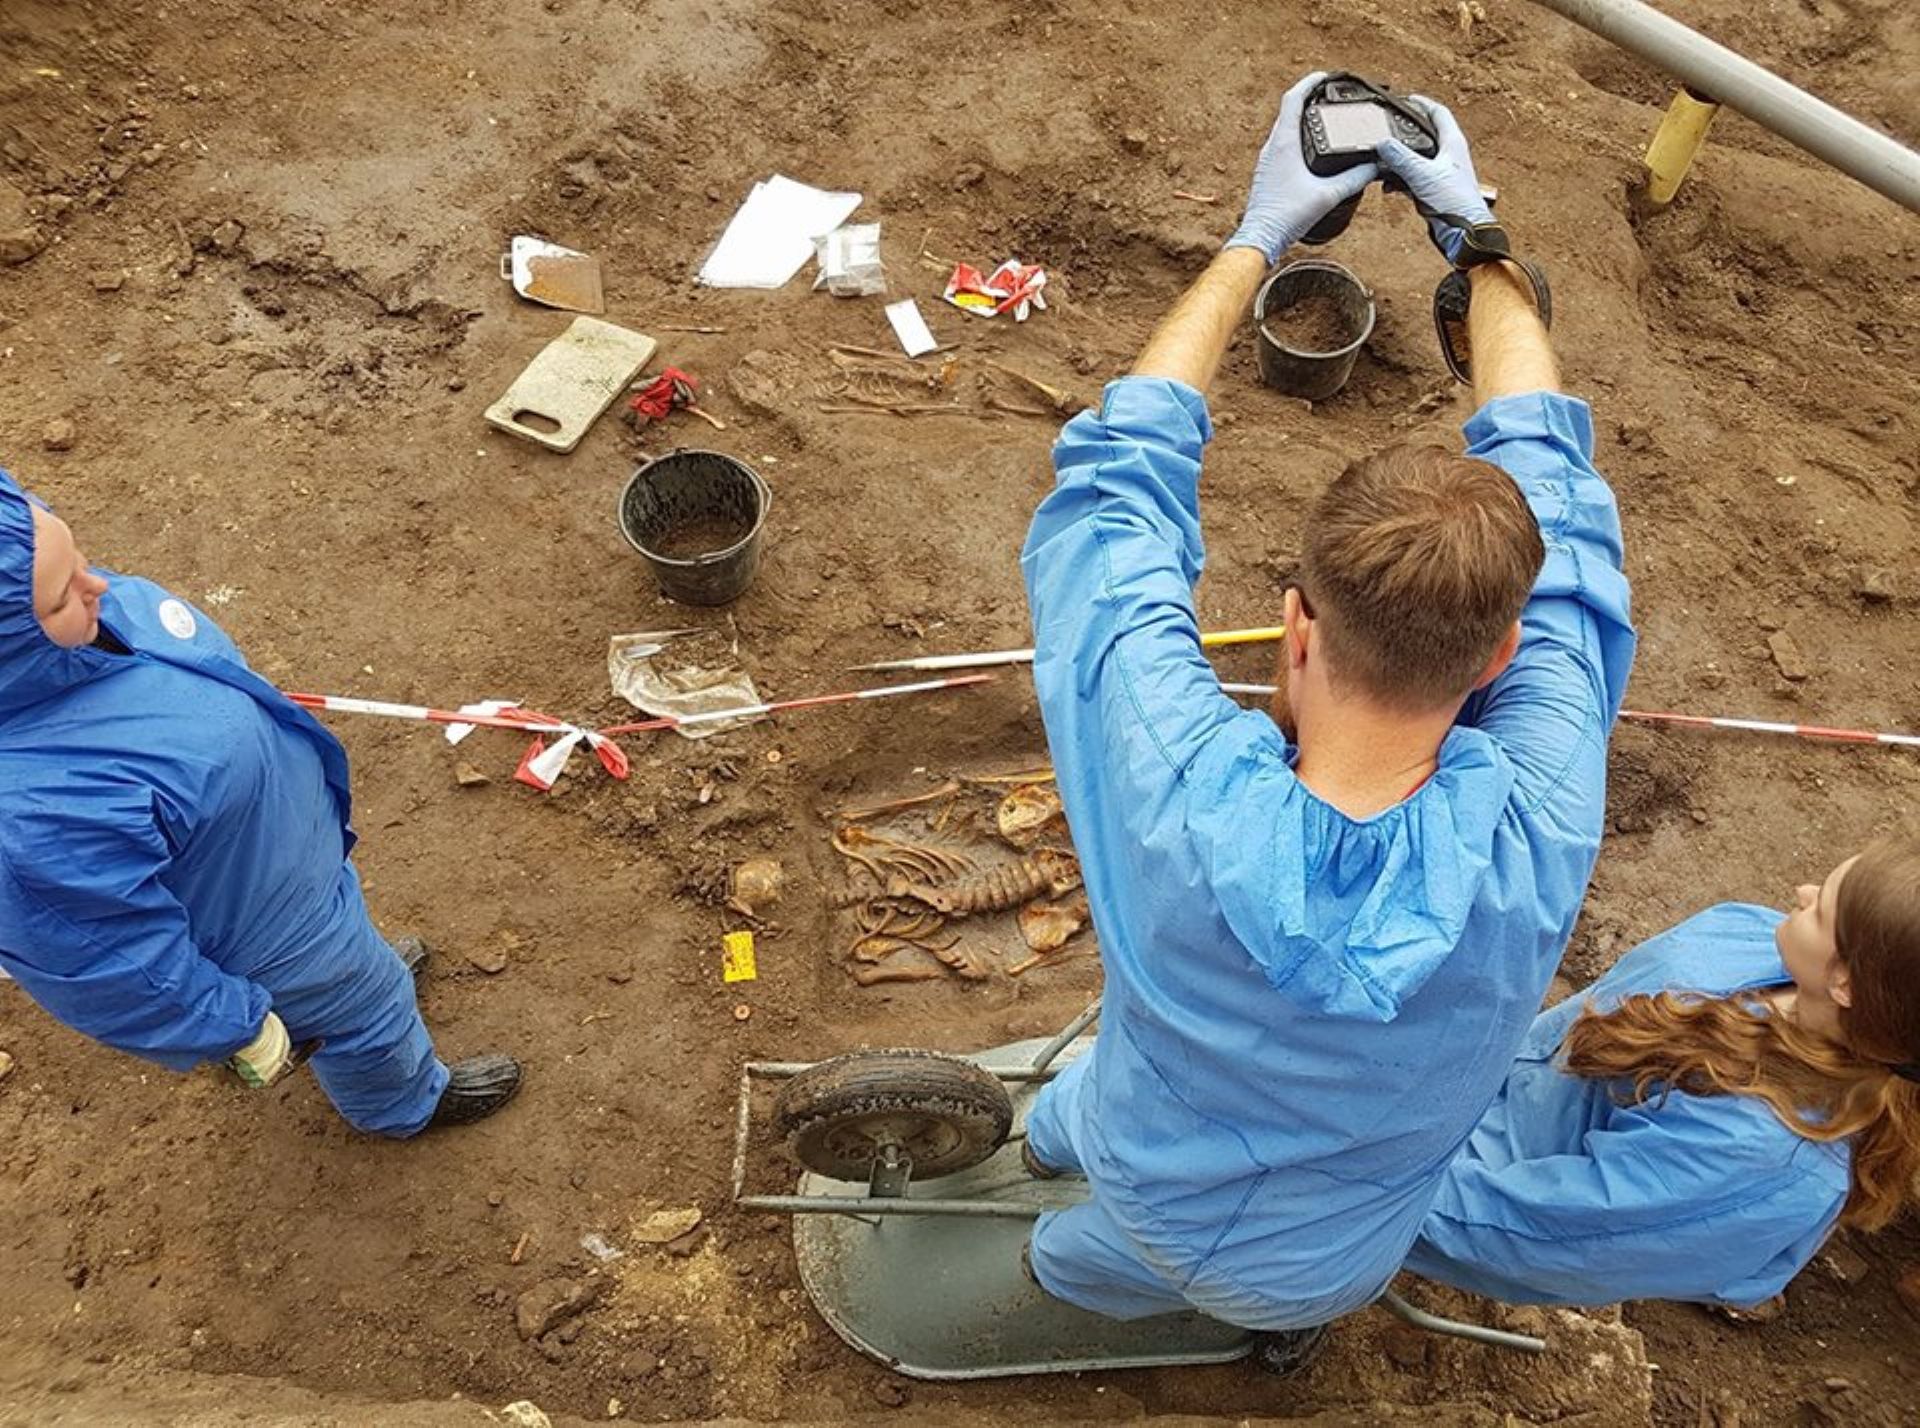 Archeologen graven dingen (en soms ook mensen) op en onderzoeken de vondsten. Van oude voorwerpen leren ze hoe het leven vroeger was.